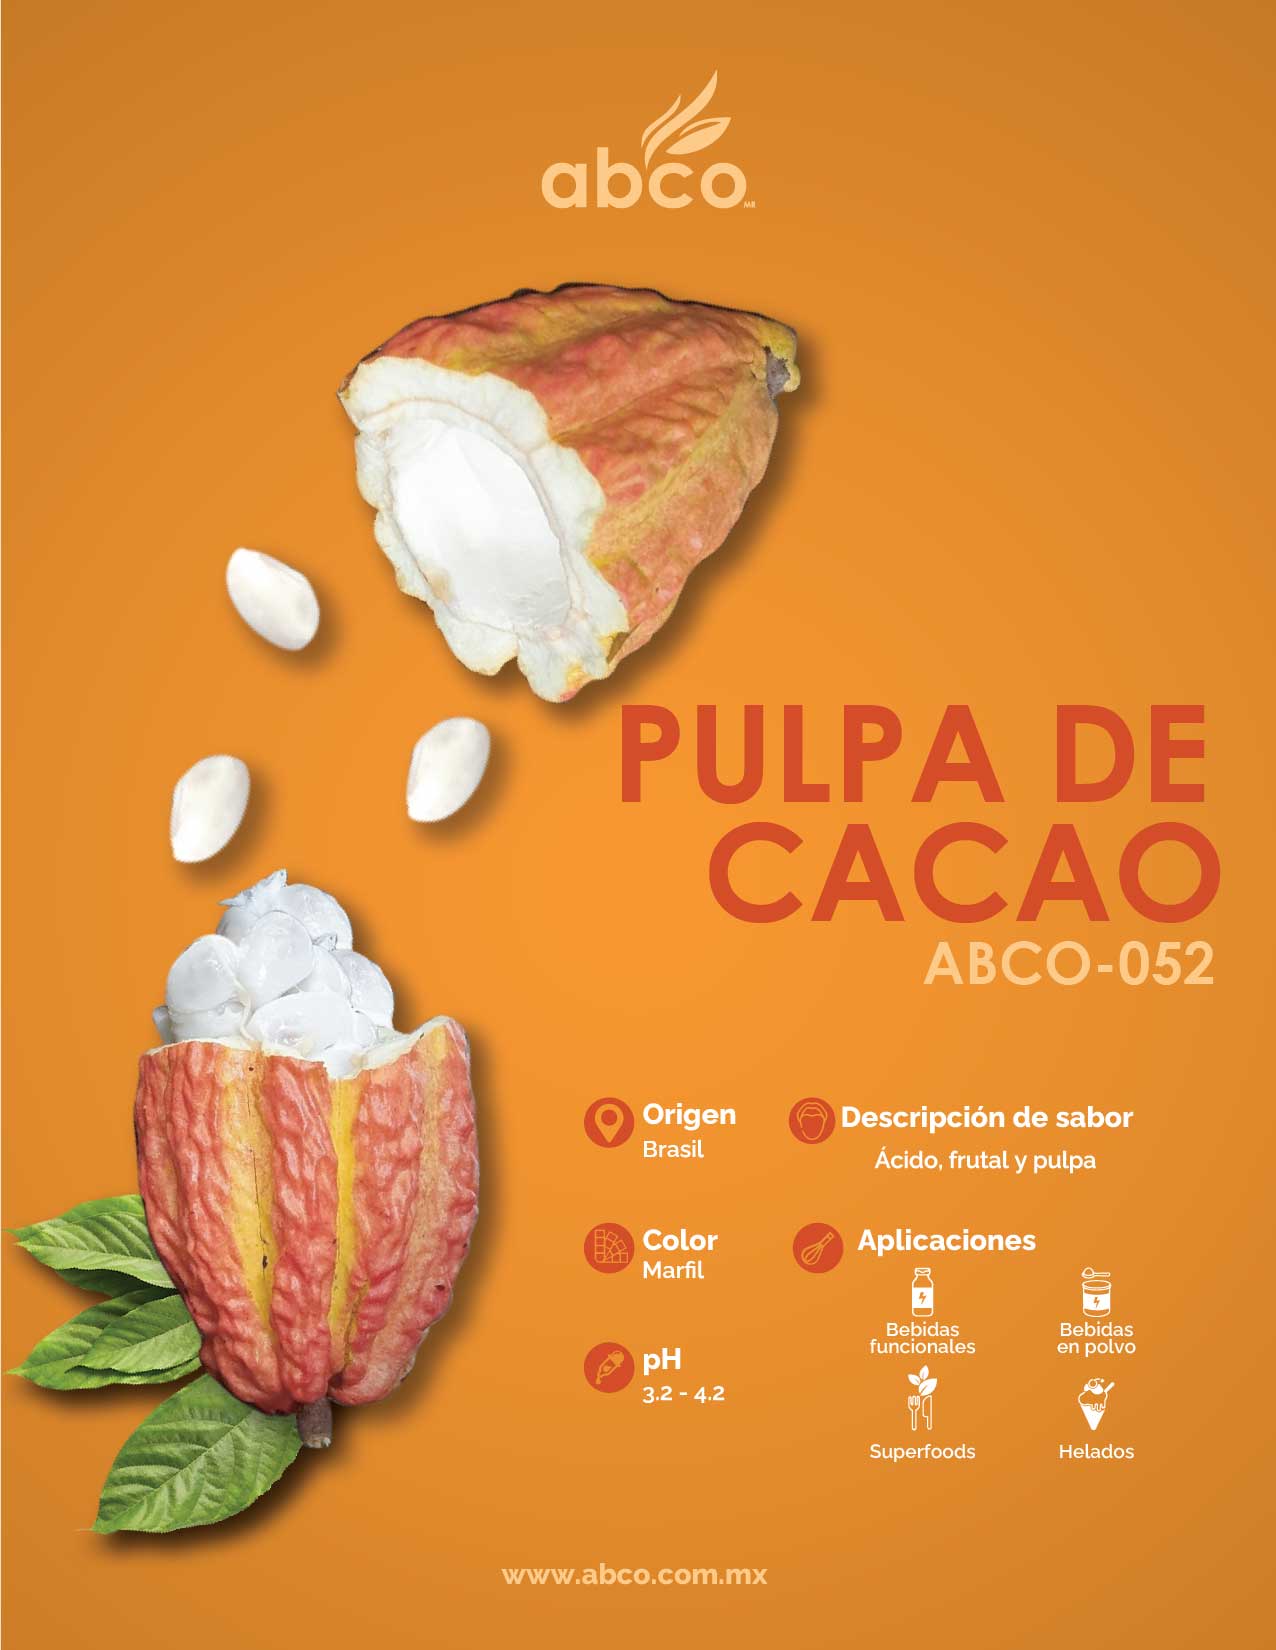 PULPA DE CACAO ABCO-052